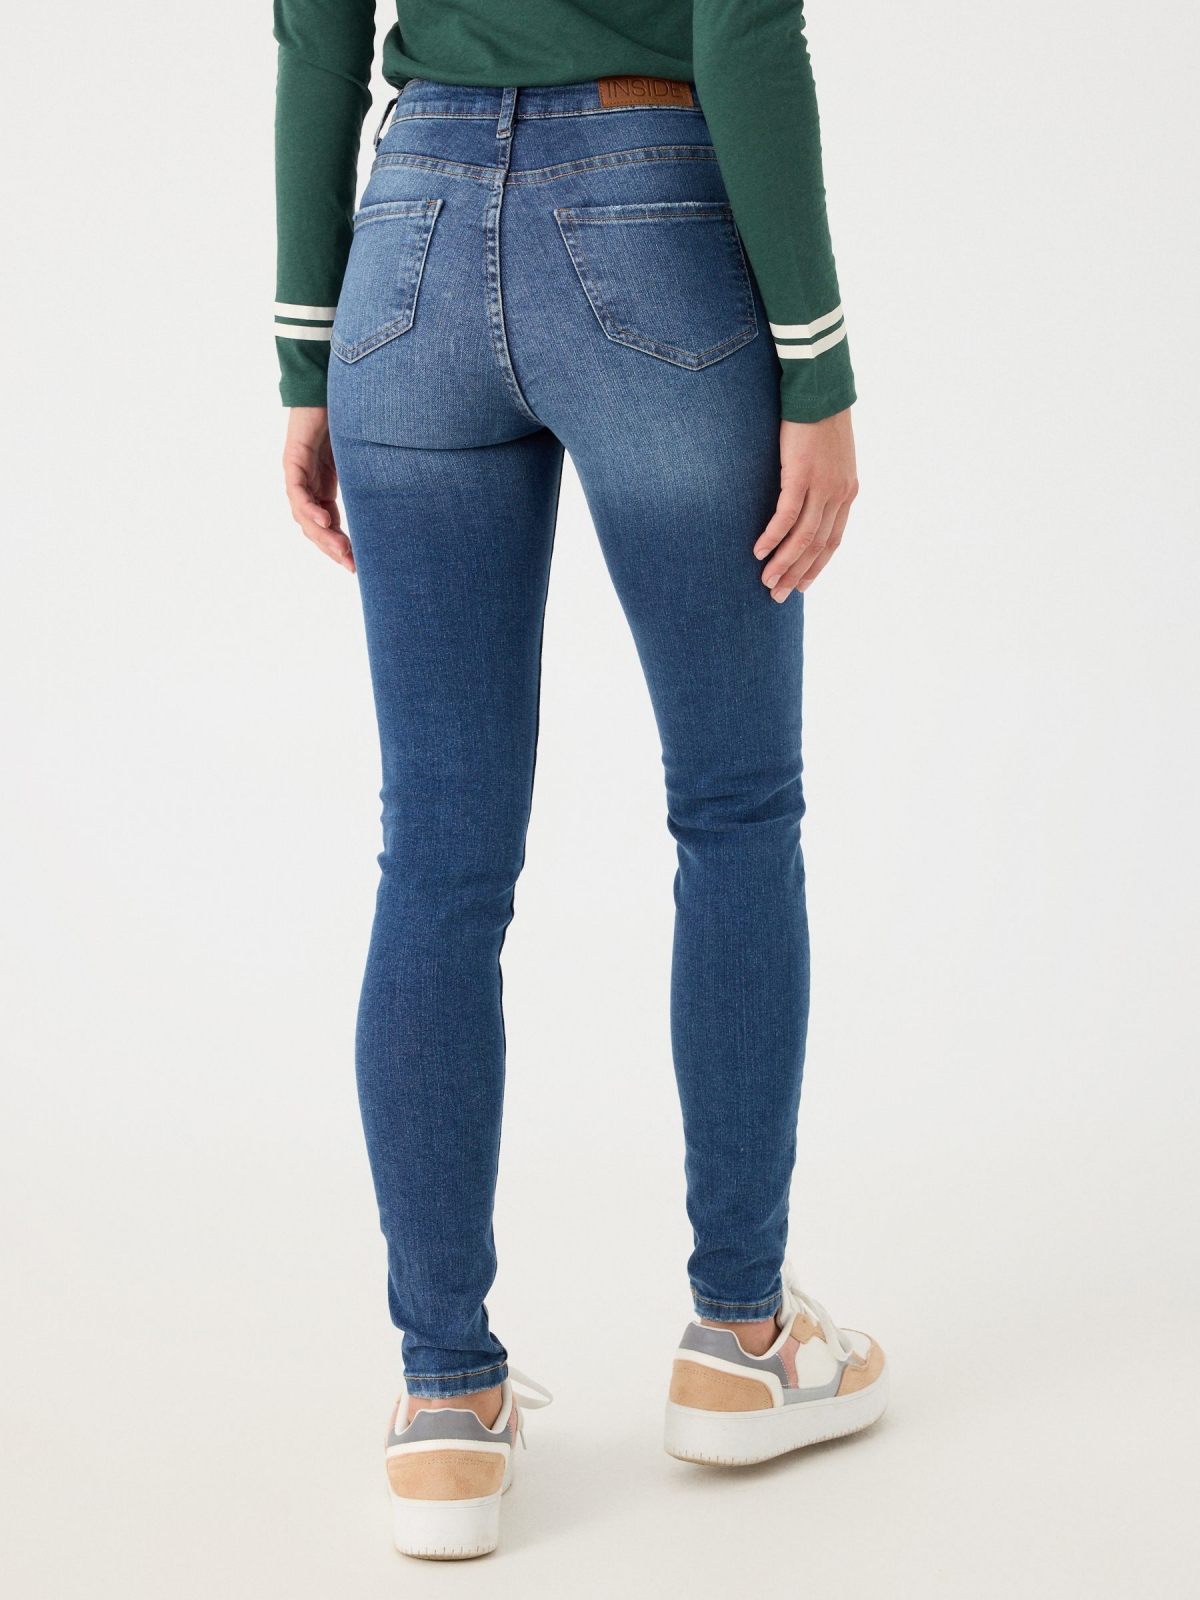 Jeans skinny cintura alta efeito lavado azul marinho vista meia traseira